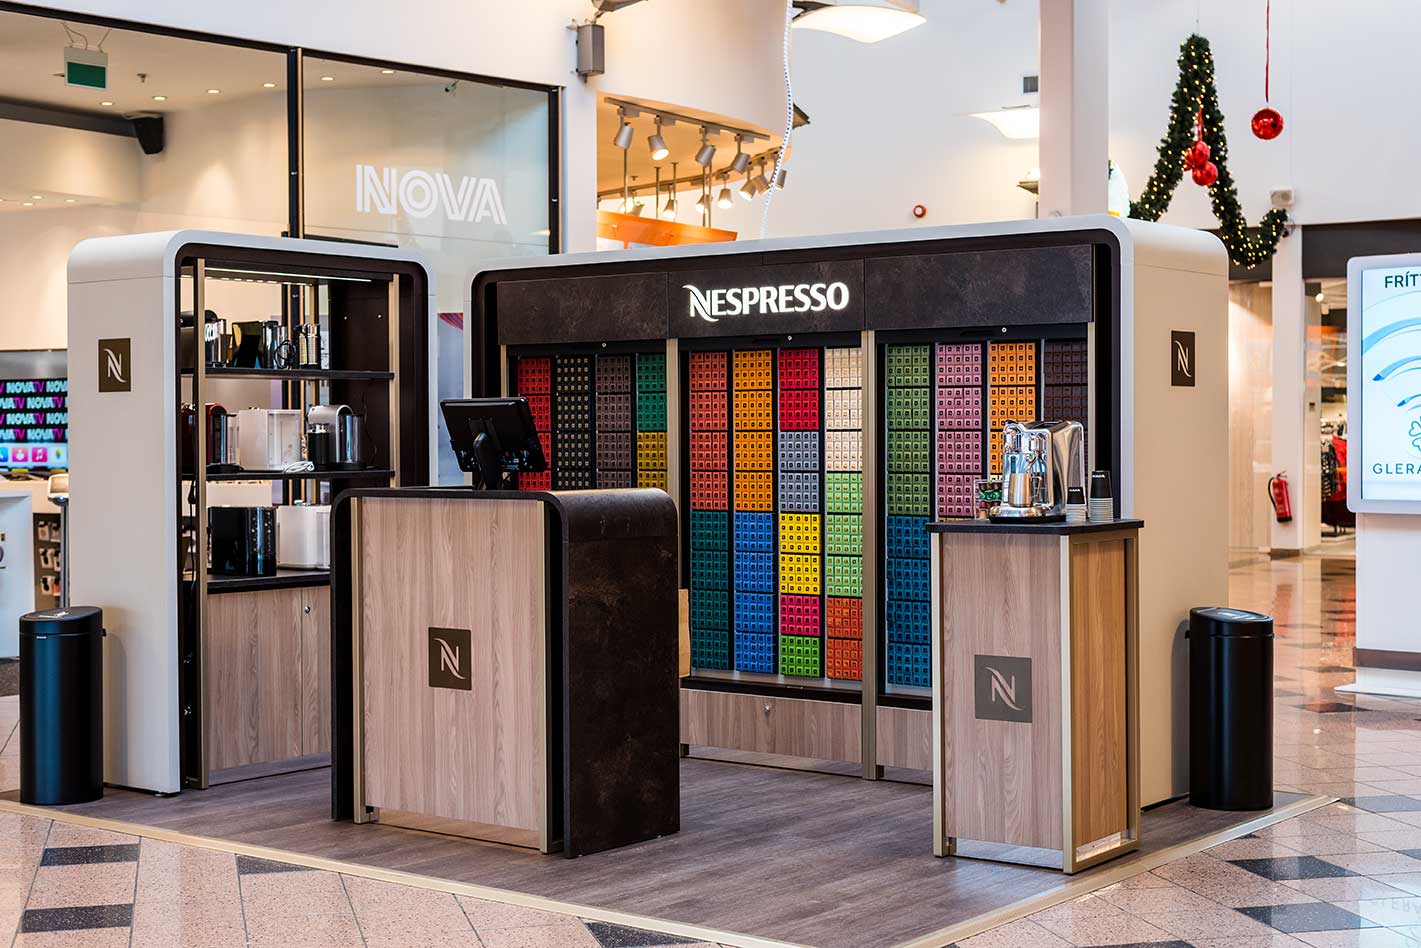 Nespresso hefur opnað verslun á Akureyri